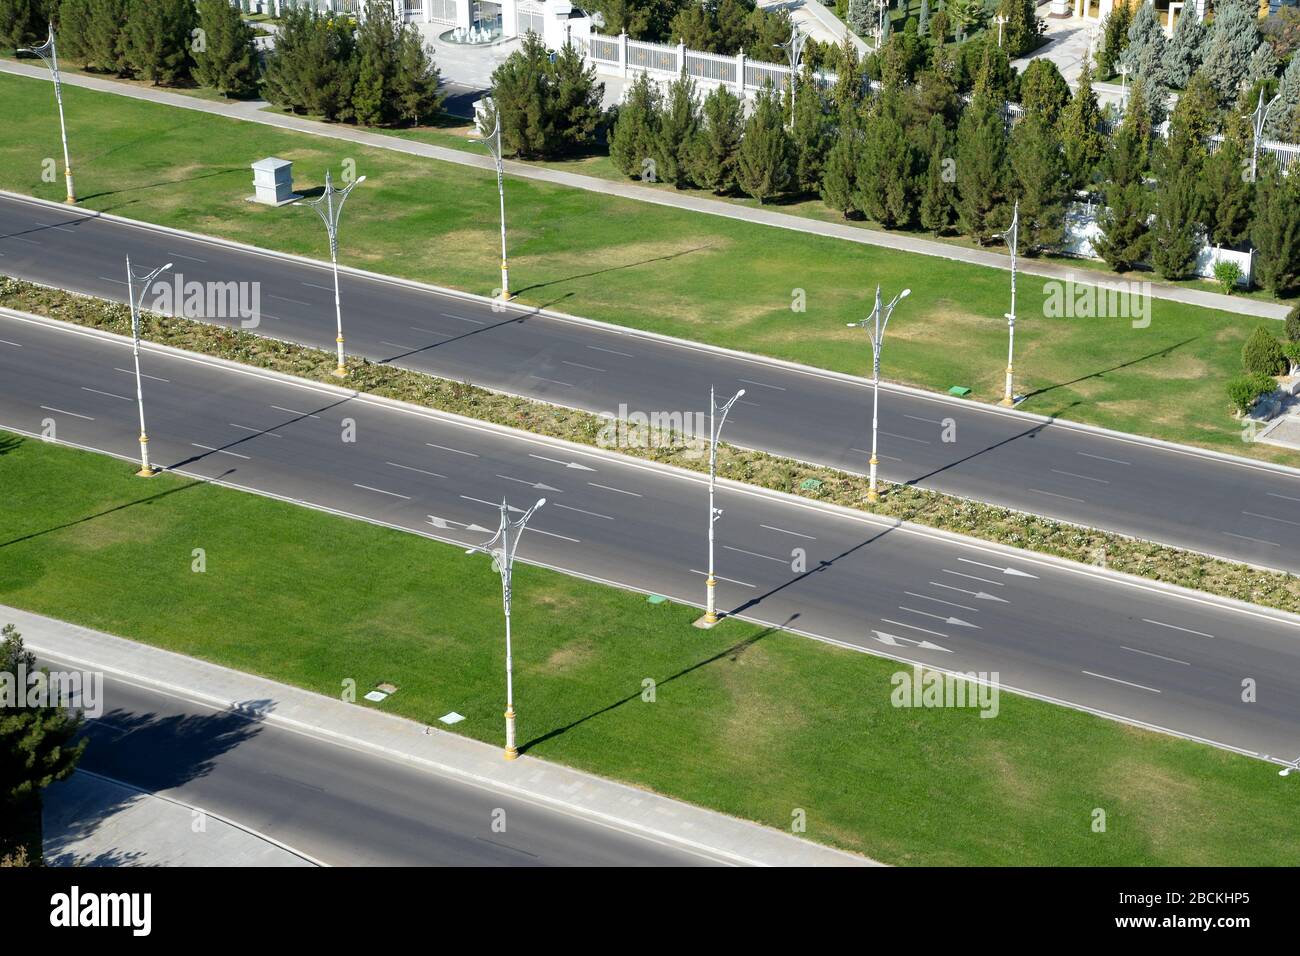 Archabil Hochgeschwindigkeitsautobahn acht Spuren breit in Ashgabat, Turkmenistan. Leere Straße, keine Autos sichtbar. Archabil Autobahn. Stockfoto